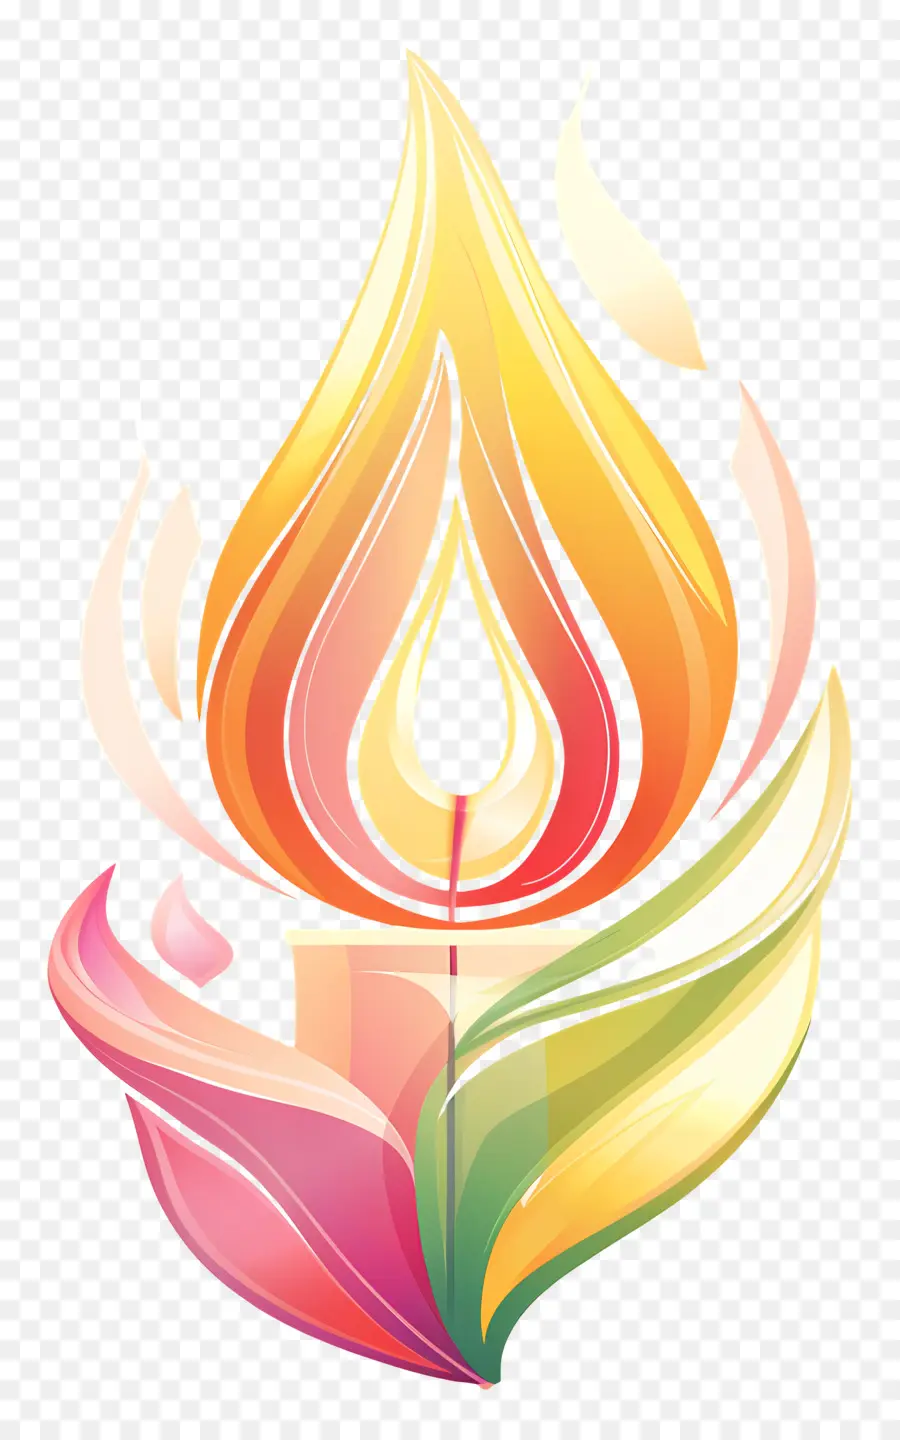 Colori luminosi a fiamma del giorno del rinnovo - Candela illuminata con fiamme danzanti, design colorato